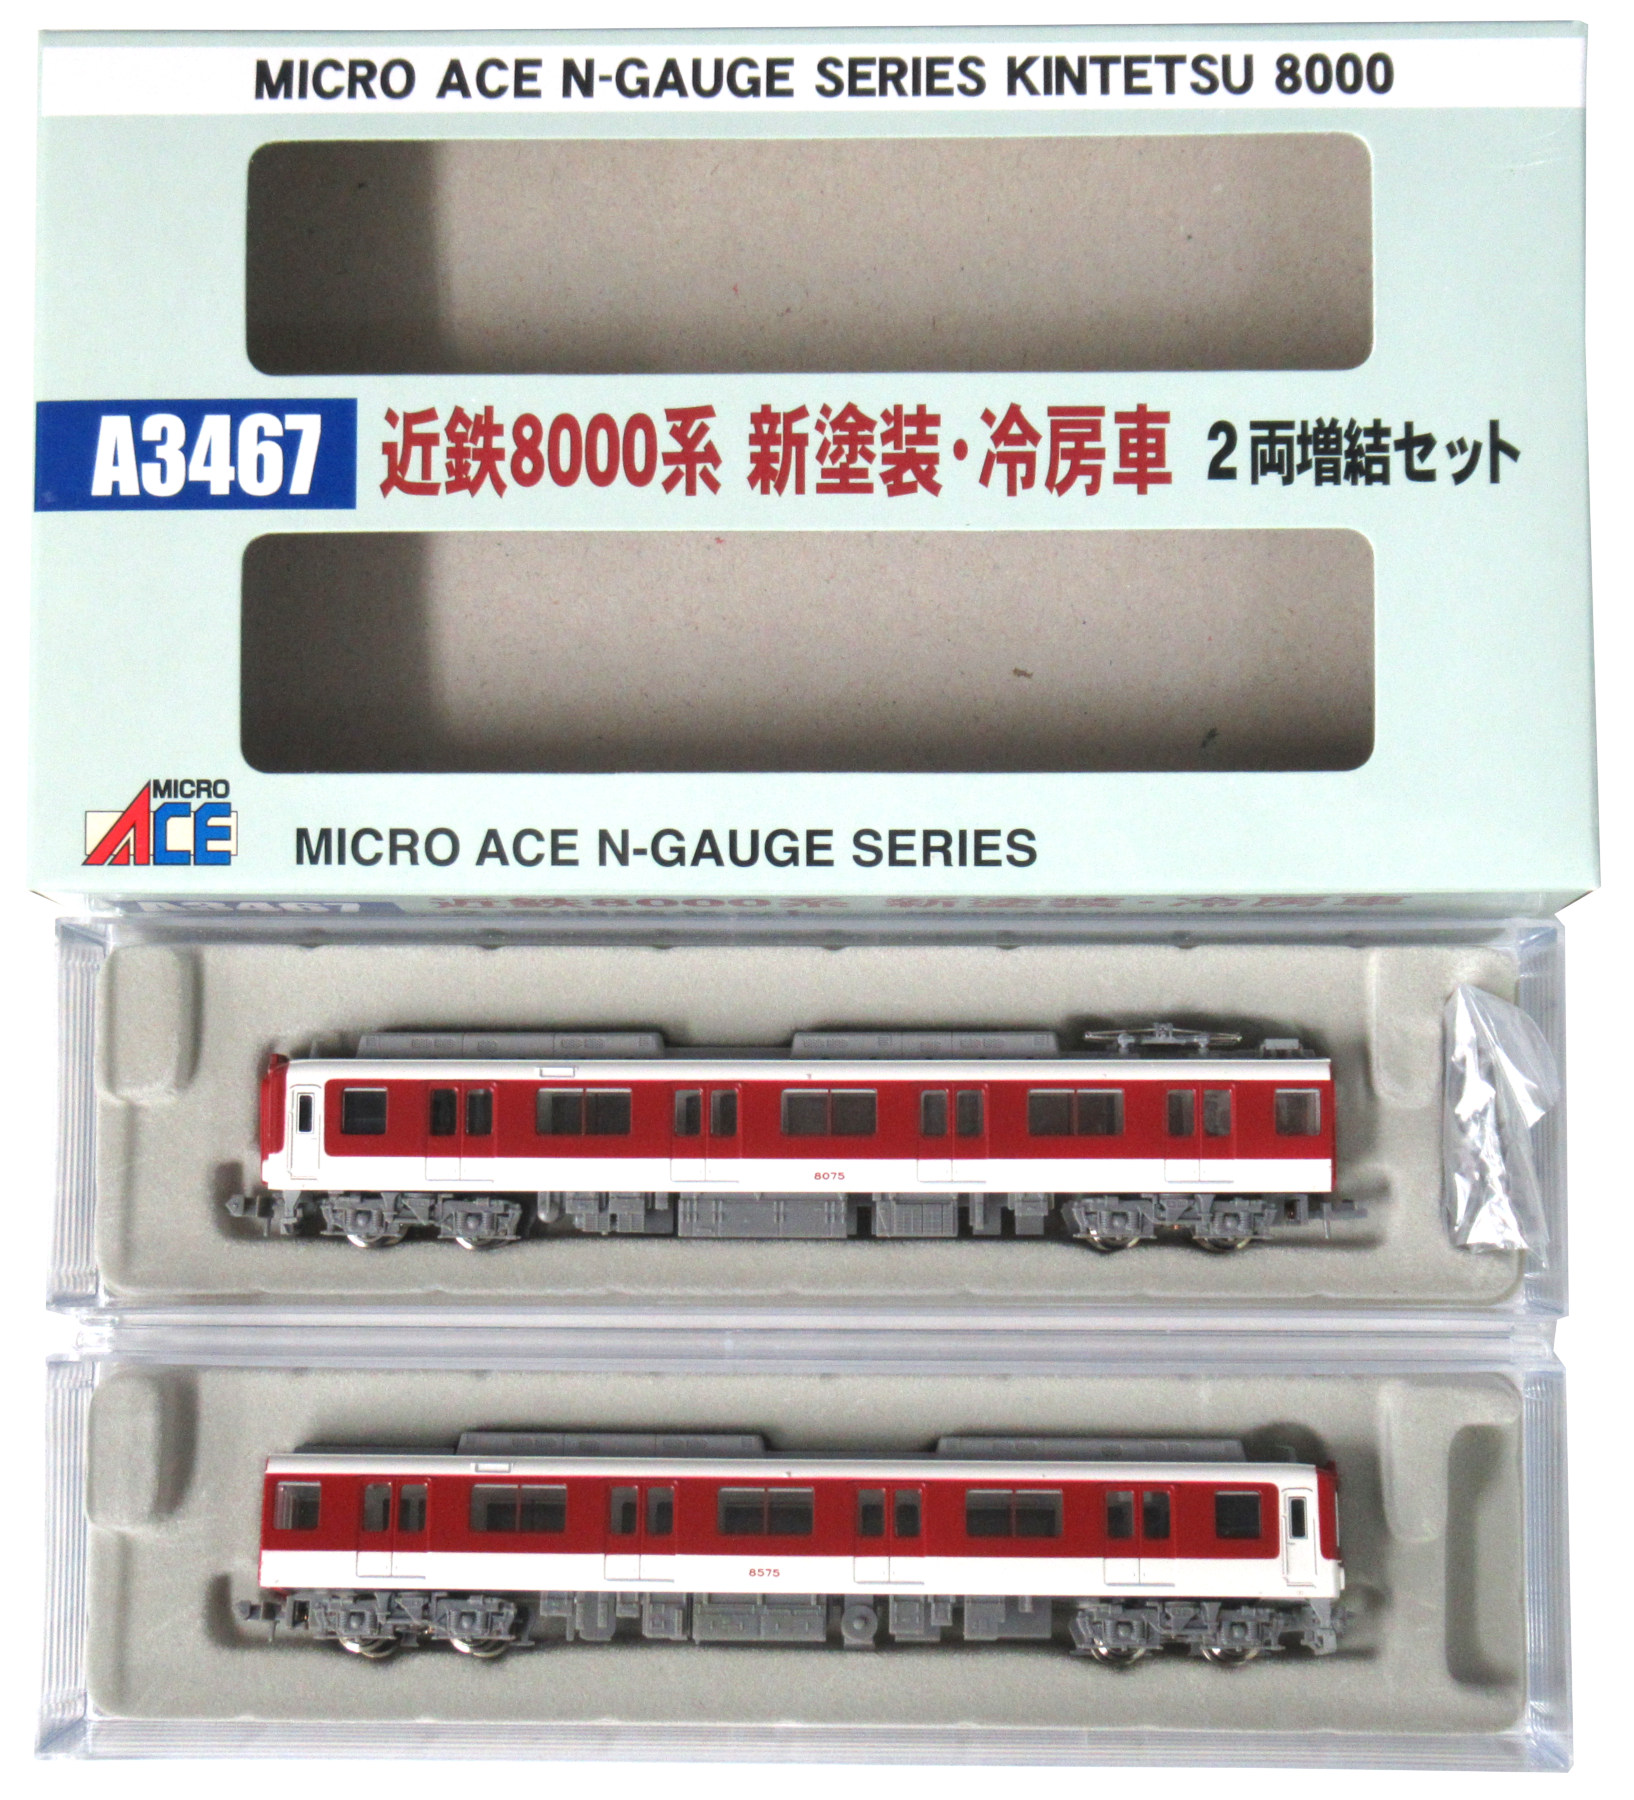 公式]鉄道模型(A3467近鉄 8000系 新塗装 冷房車 2両増結セット)商品 